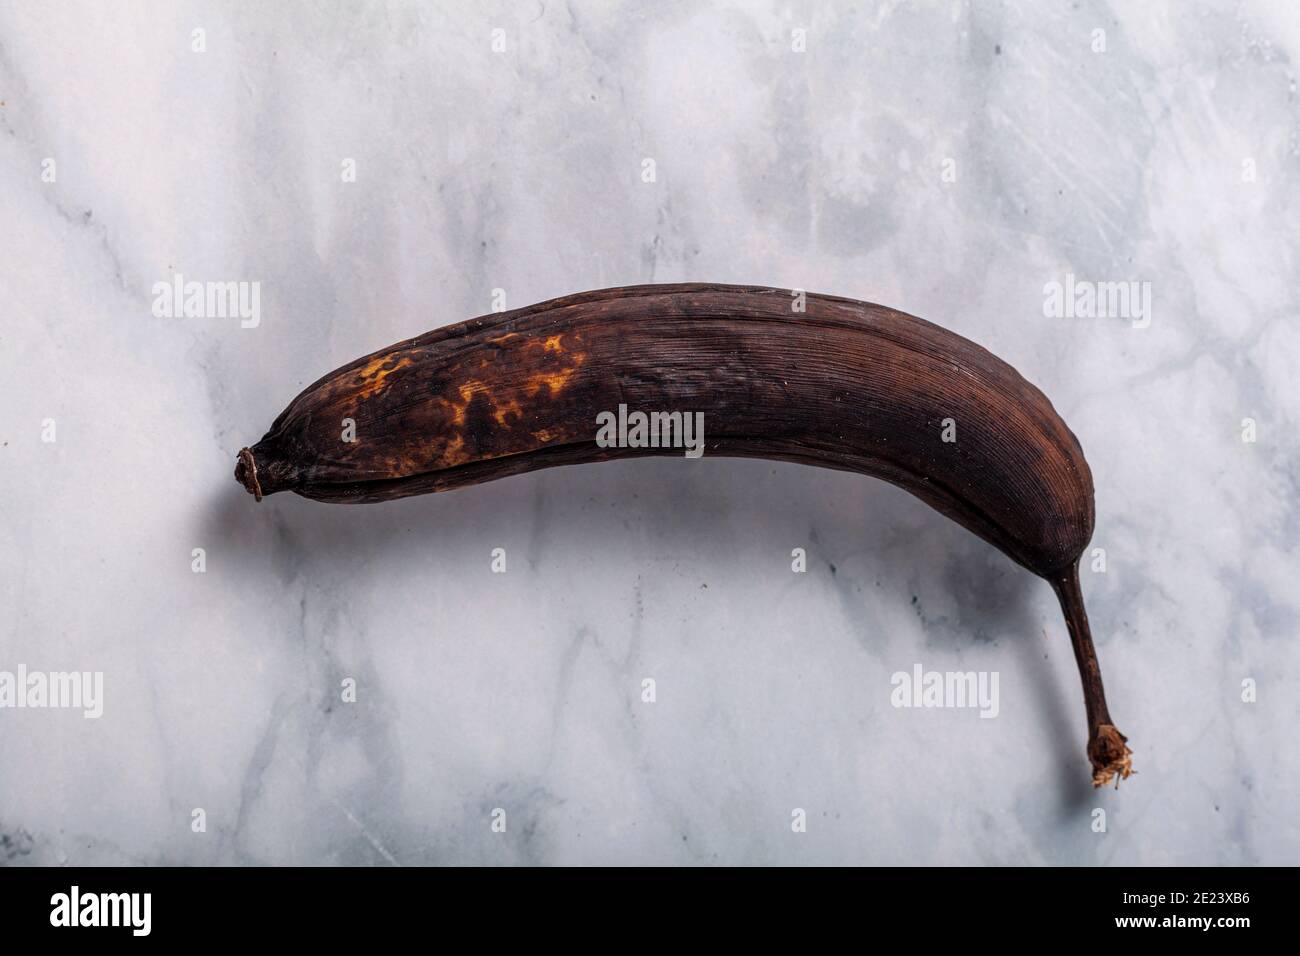 Immagine piatta di una banana nella sua pelle. La buccia è ricoperta da macchie scure che indicano una maturazione eccessiva e un cattivo. Questo frutto stantio è un prodotto di e. Foto Stock